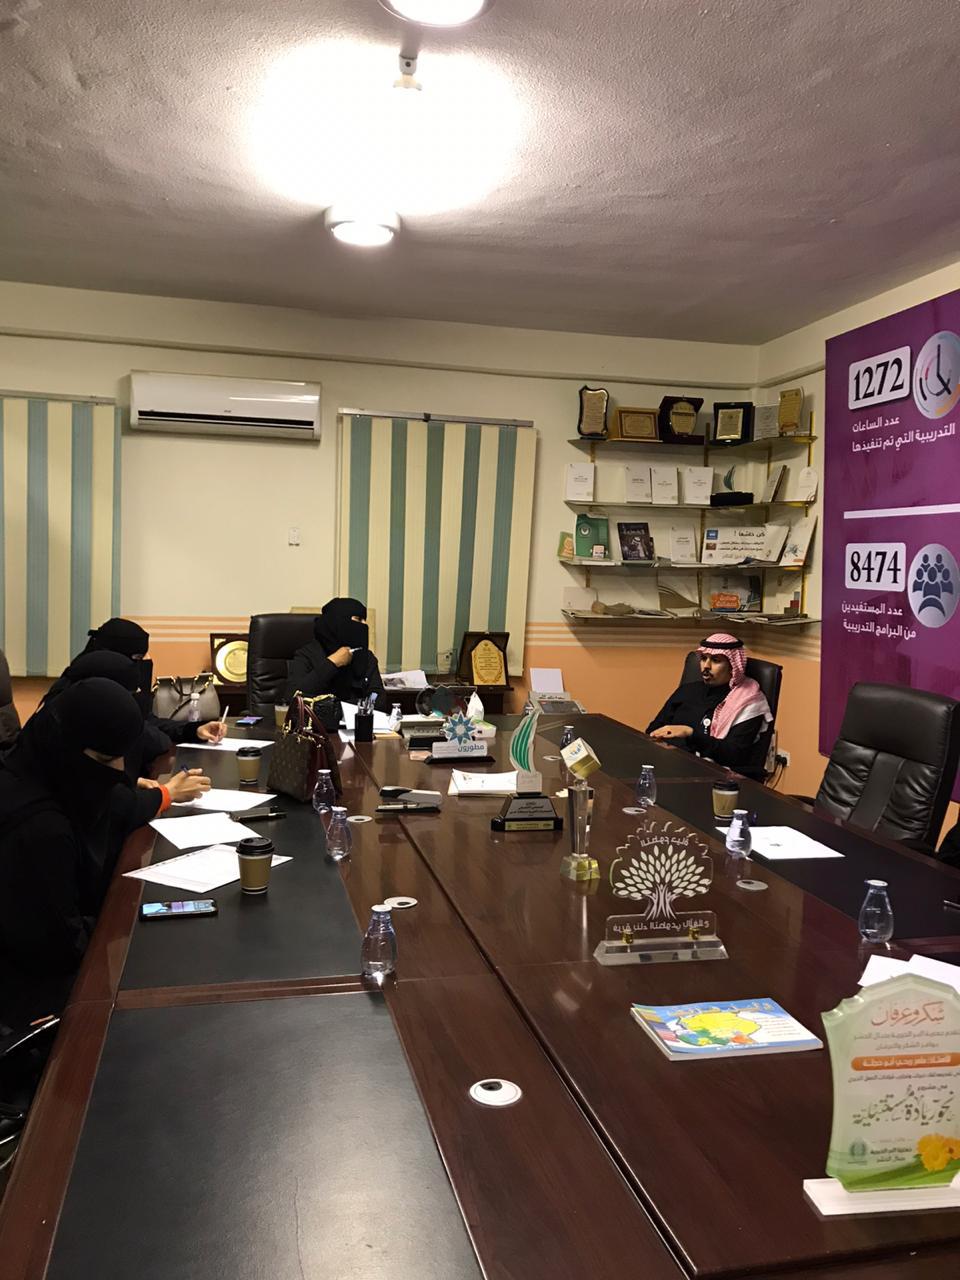 جمعية صحة المرأة بعسير تعقد اجتماع مجلس الإدارة وتلتقي بالمستشارين